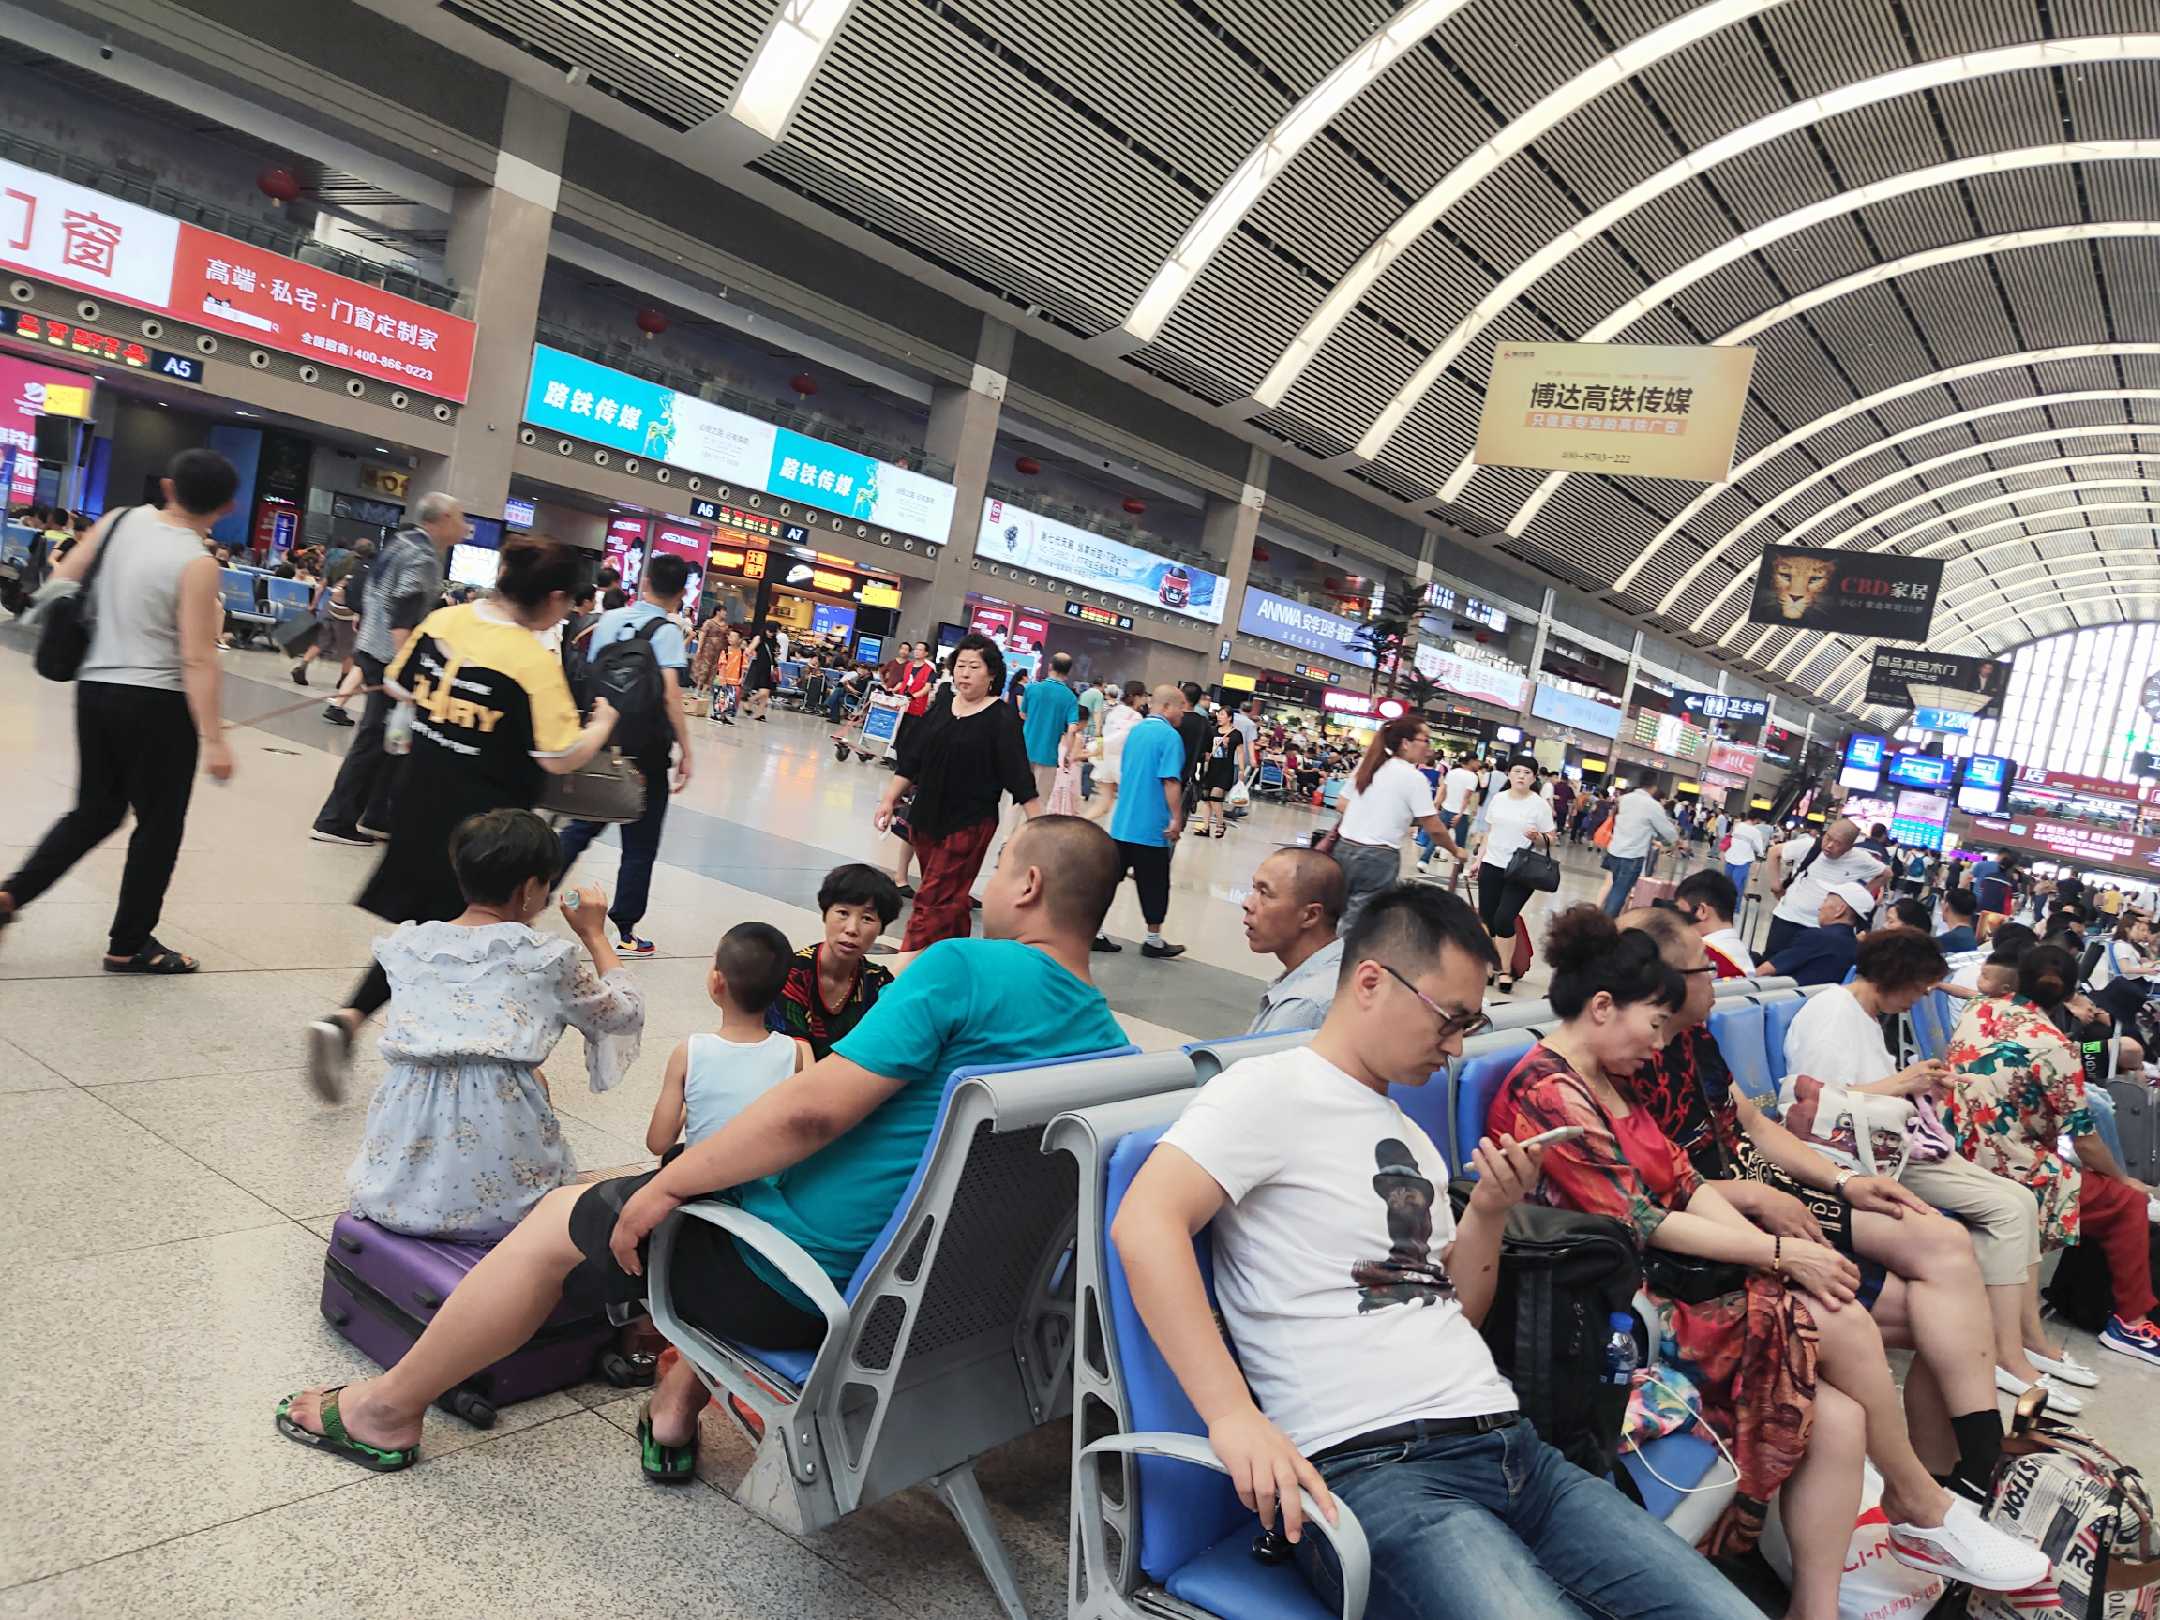 2019年7月30日讯,沈阳站二楼高铁候车室里,五湖四海的旅客人山人海都